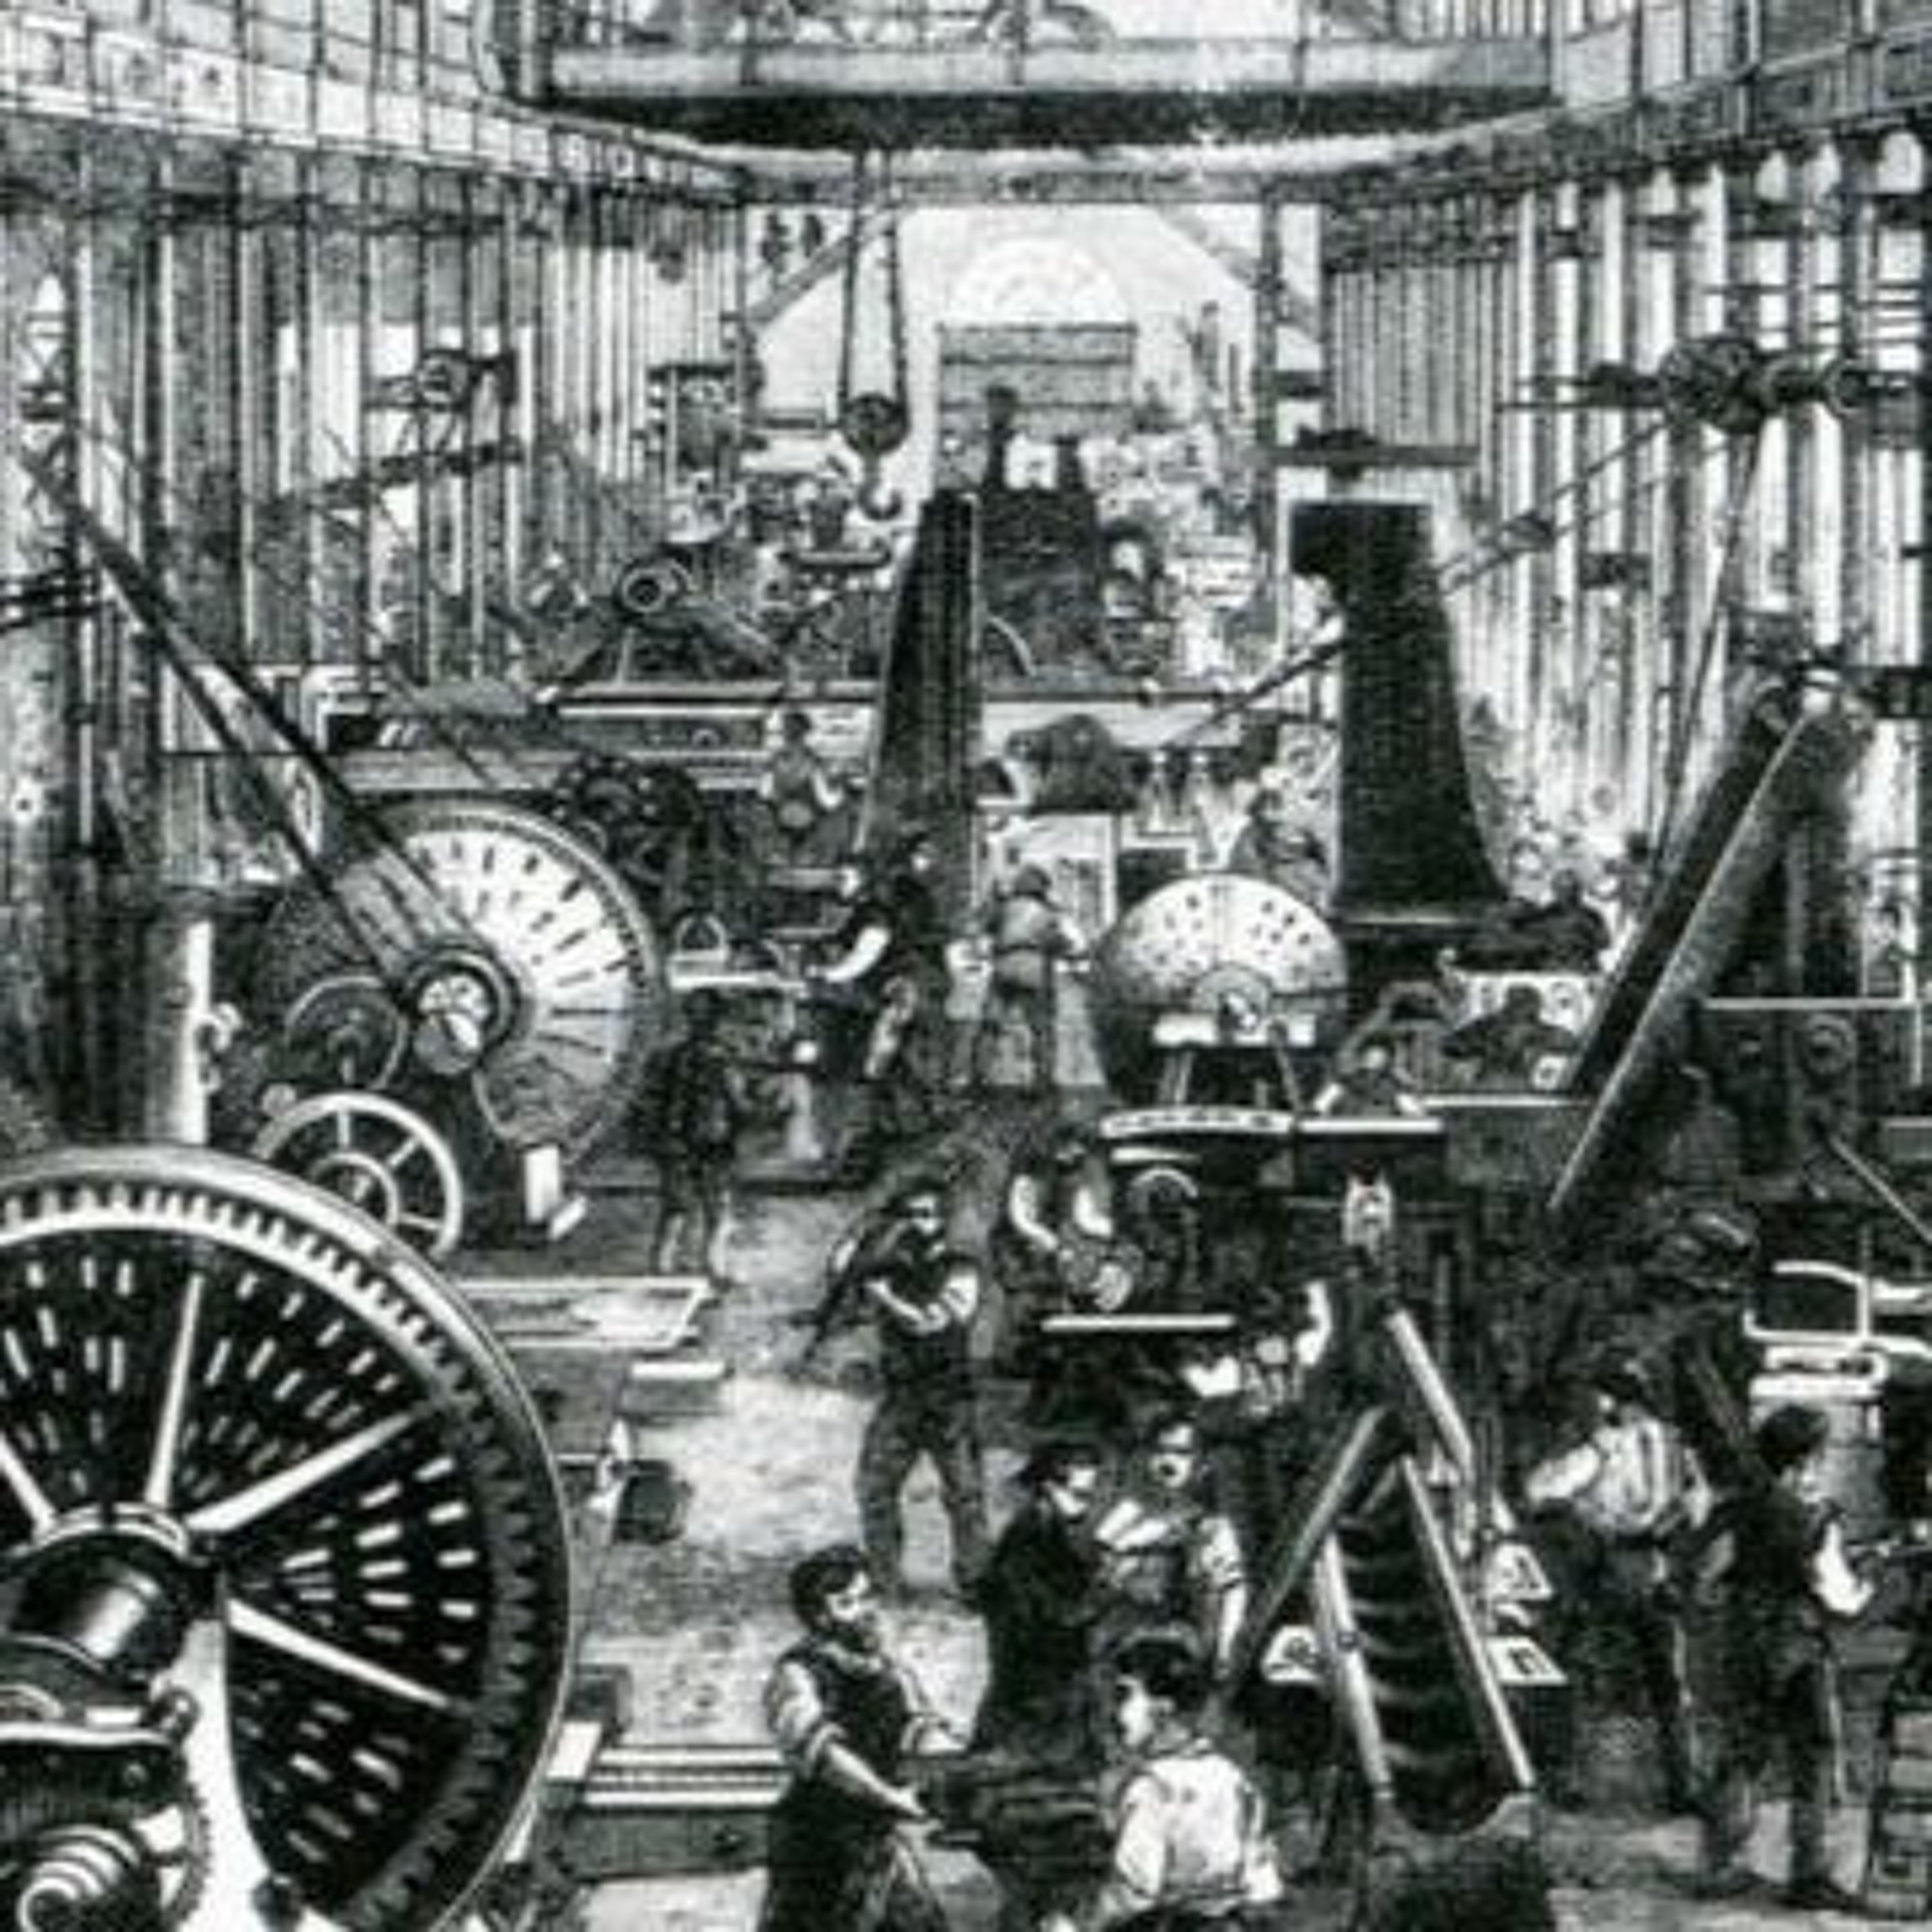 Industrial century. Промышленная революция в Англии 19 век. Промышленная Англия 19 век. Индустриализация 19 век. Промышленная революция 19.век США.